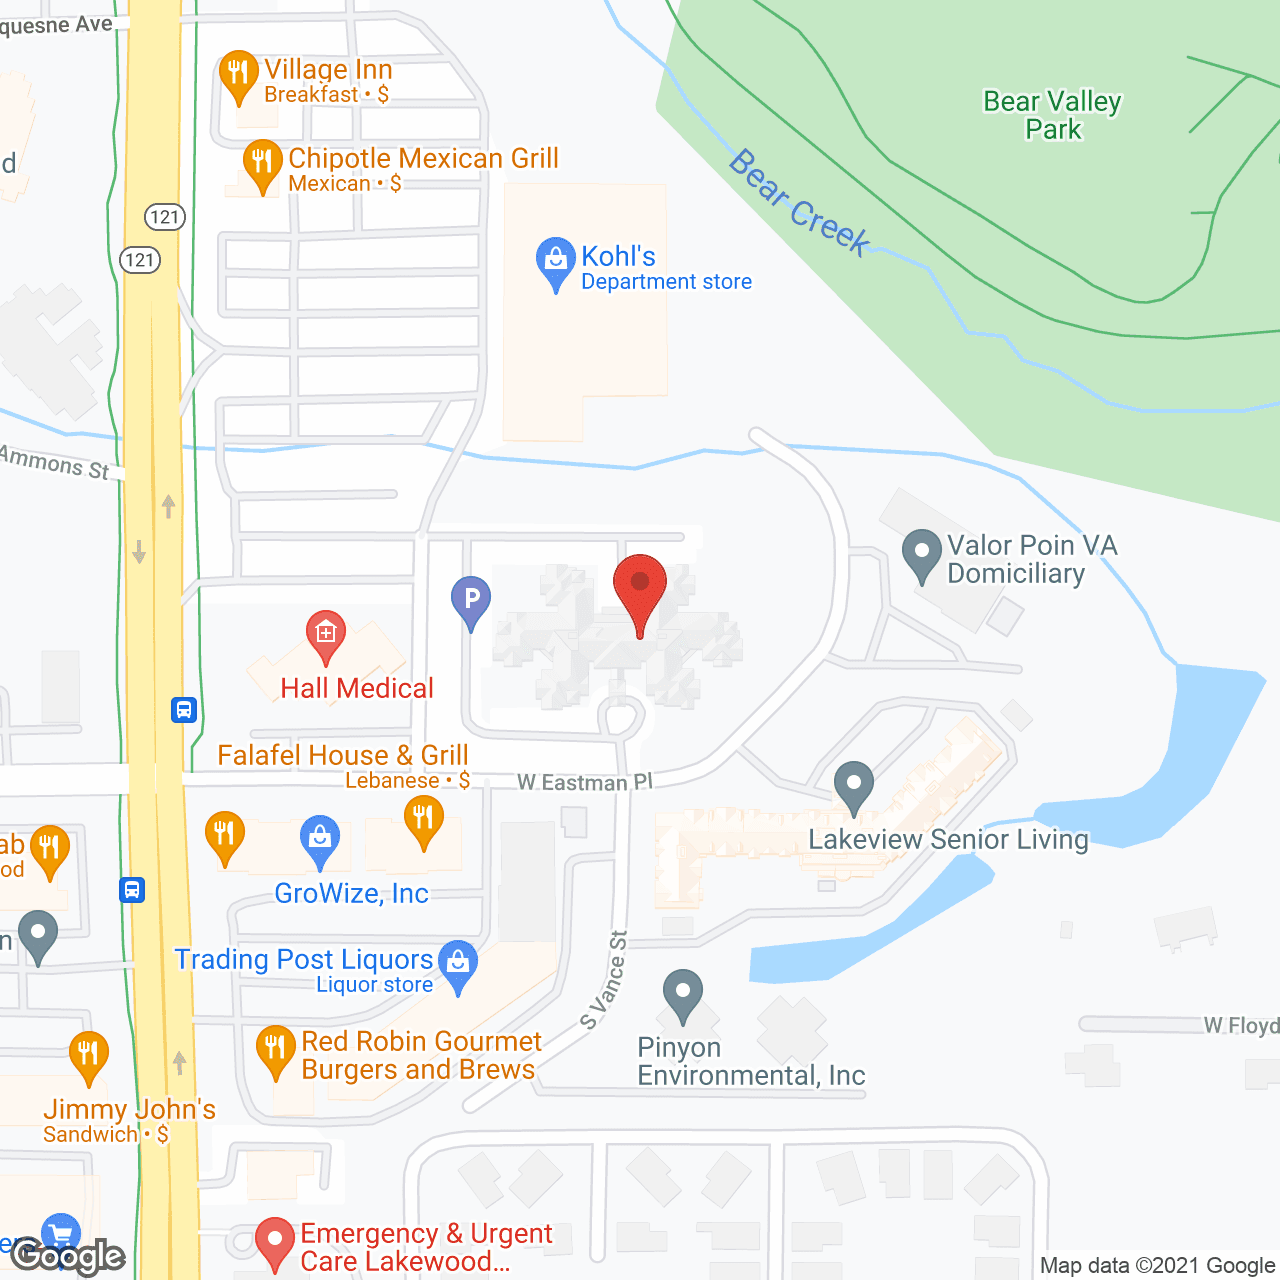 ProMedica Lakewood in google map